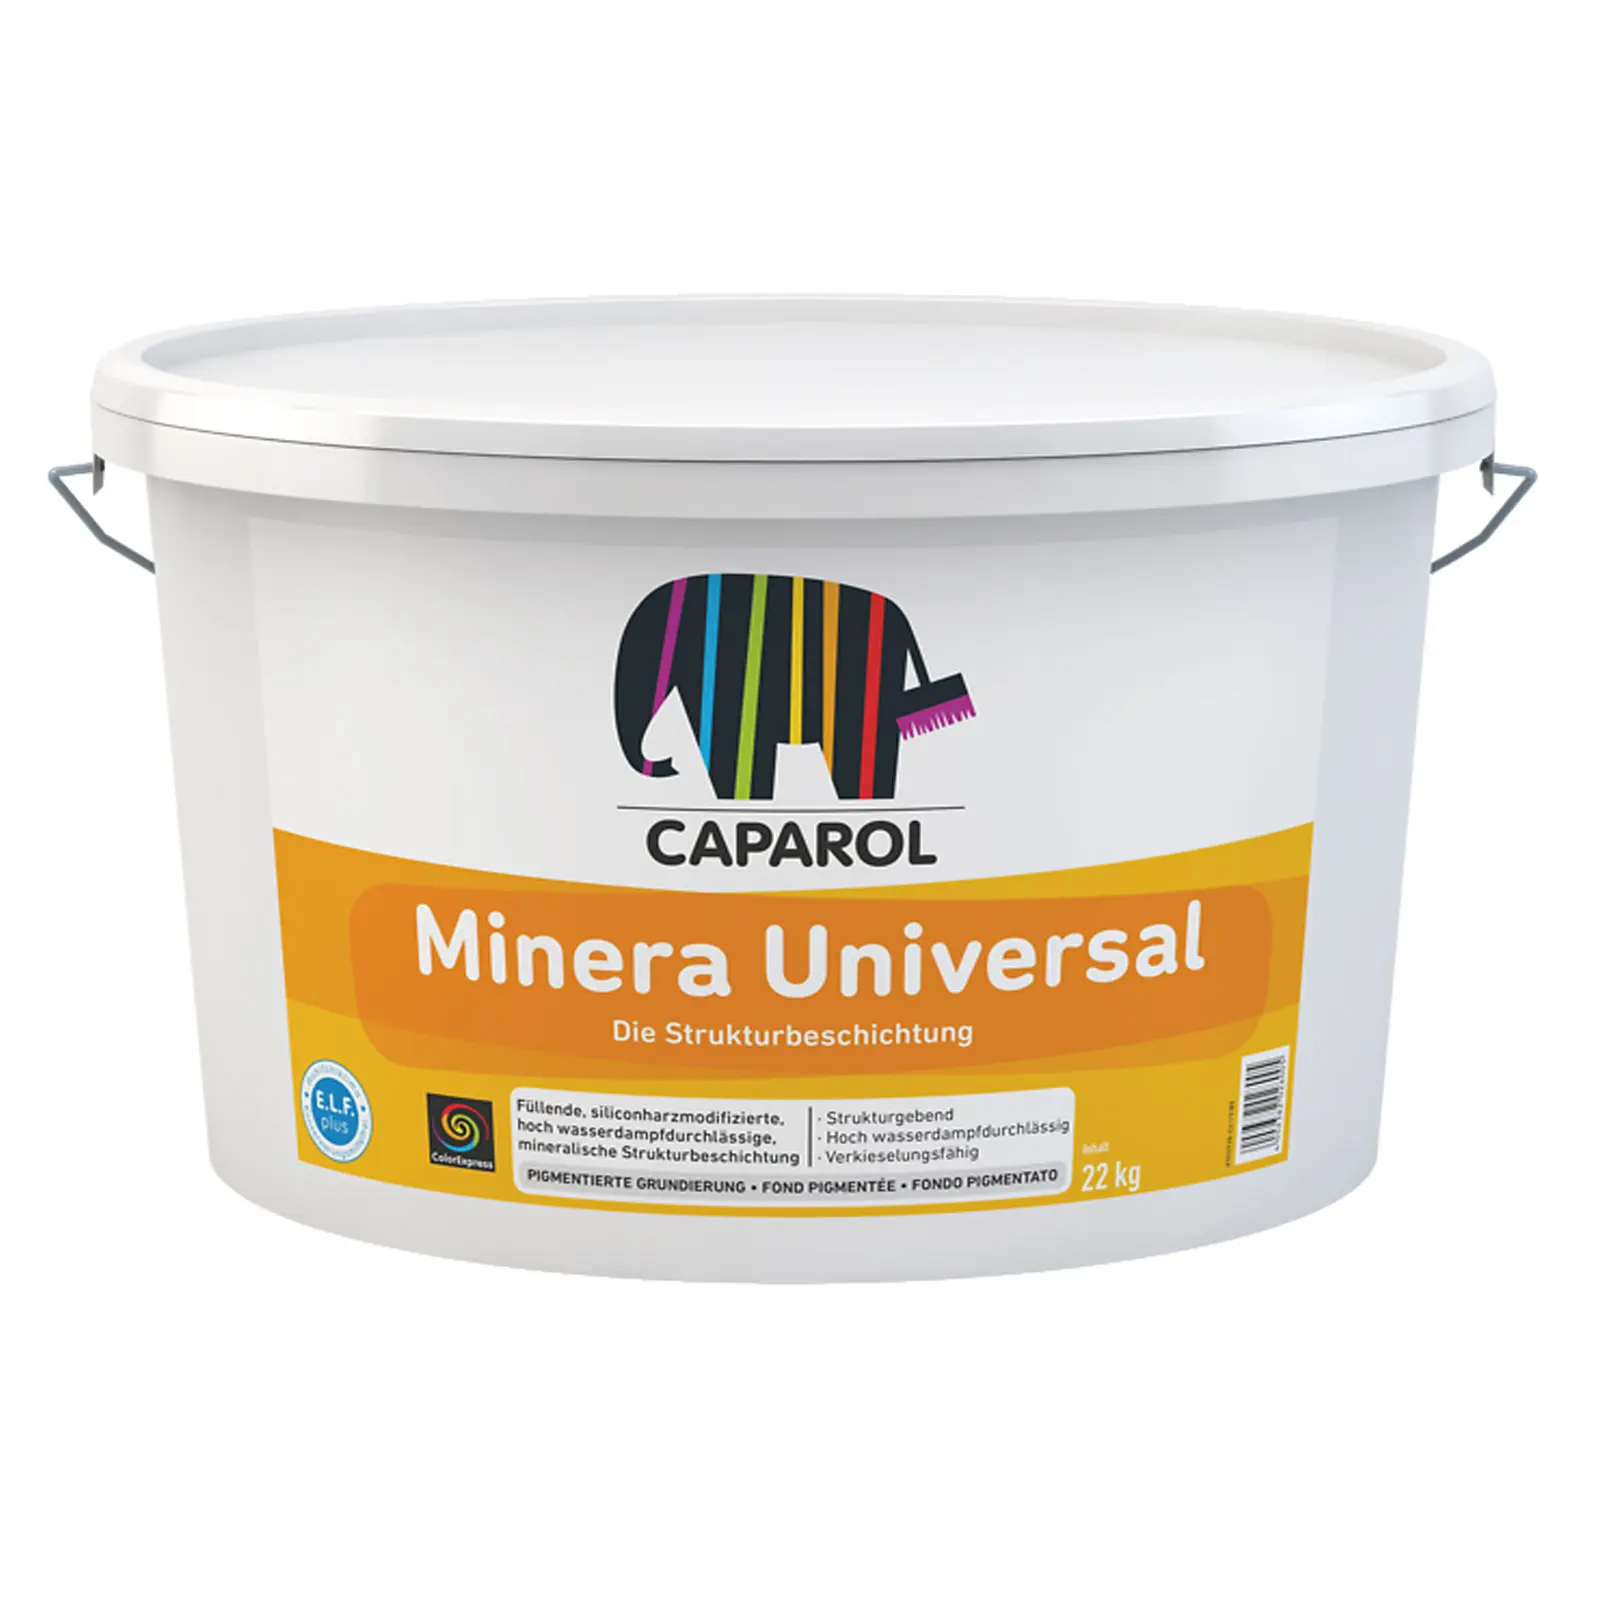 Caparol Minera Universal 8 kg